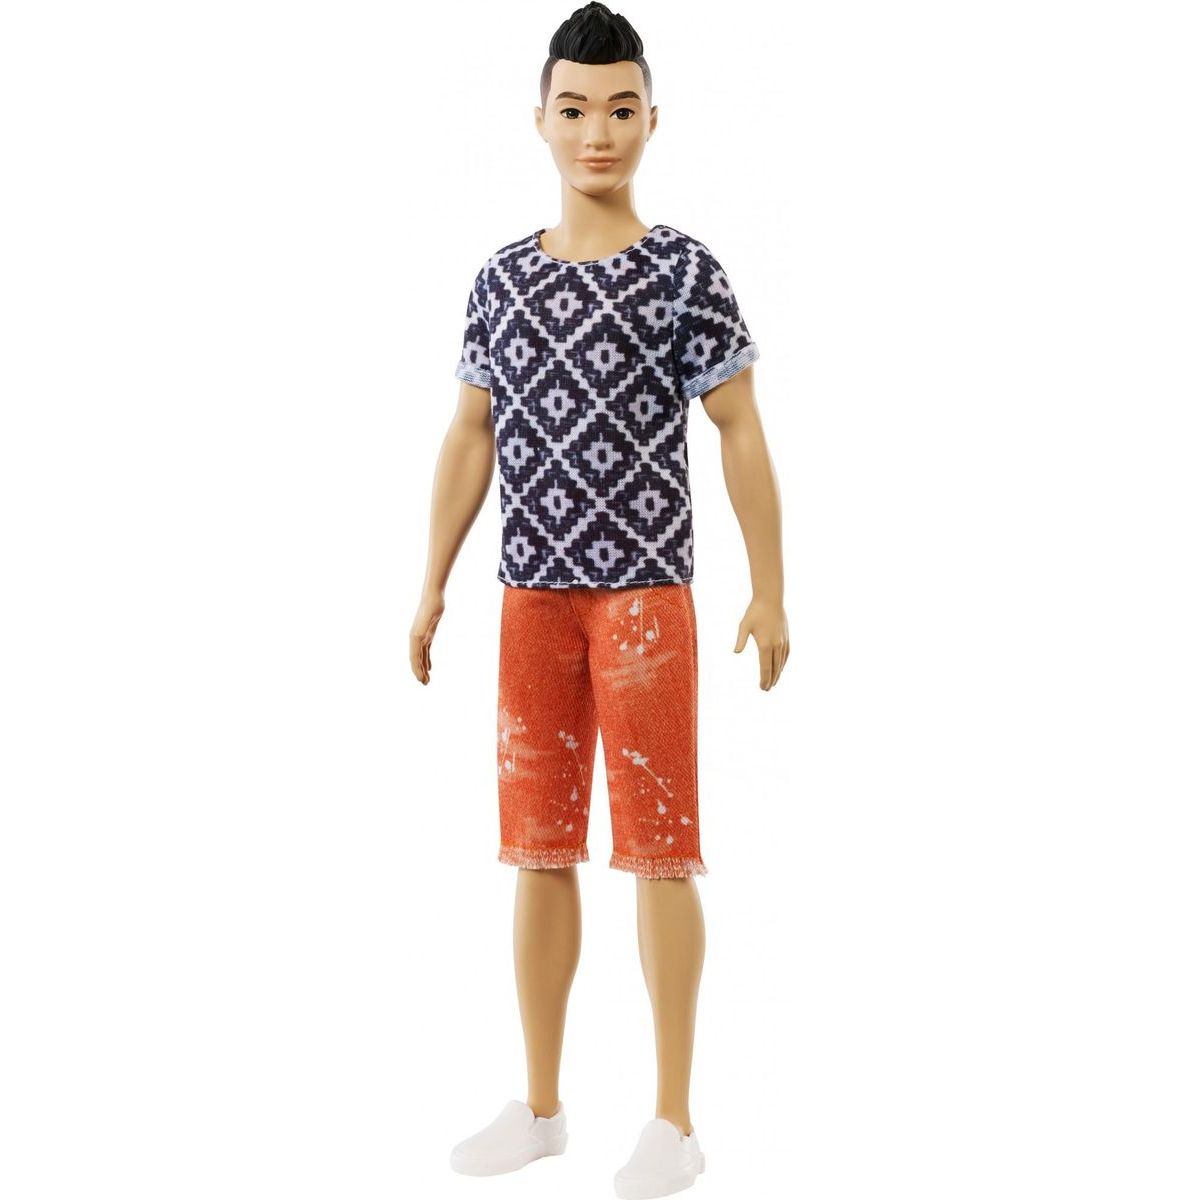 Mattel Barbie model Ken 115